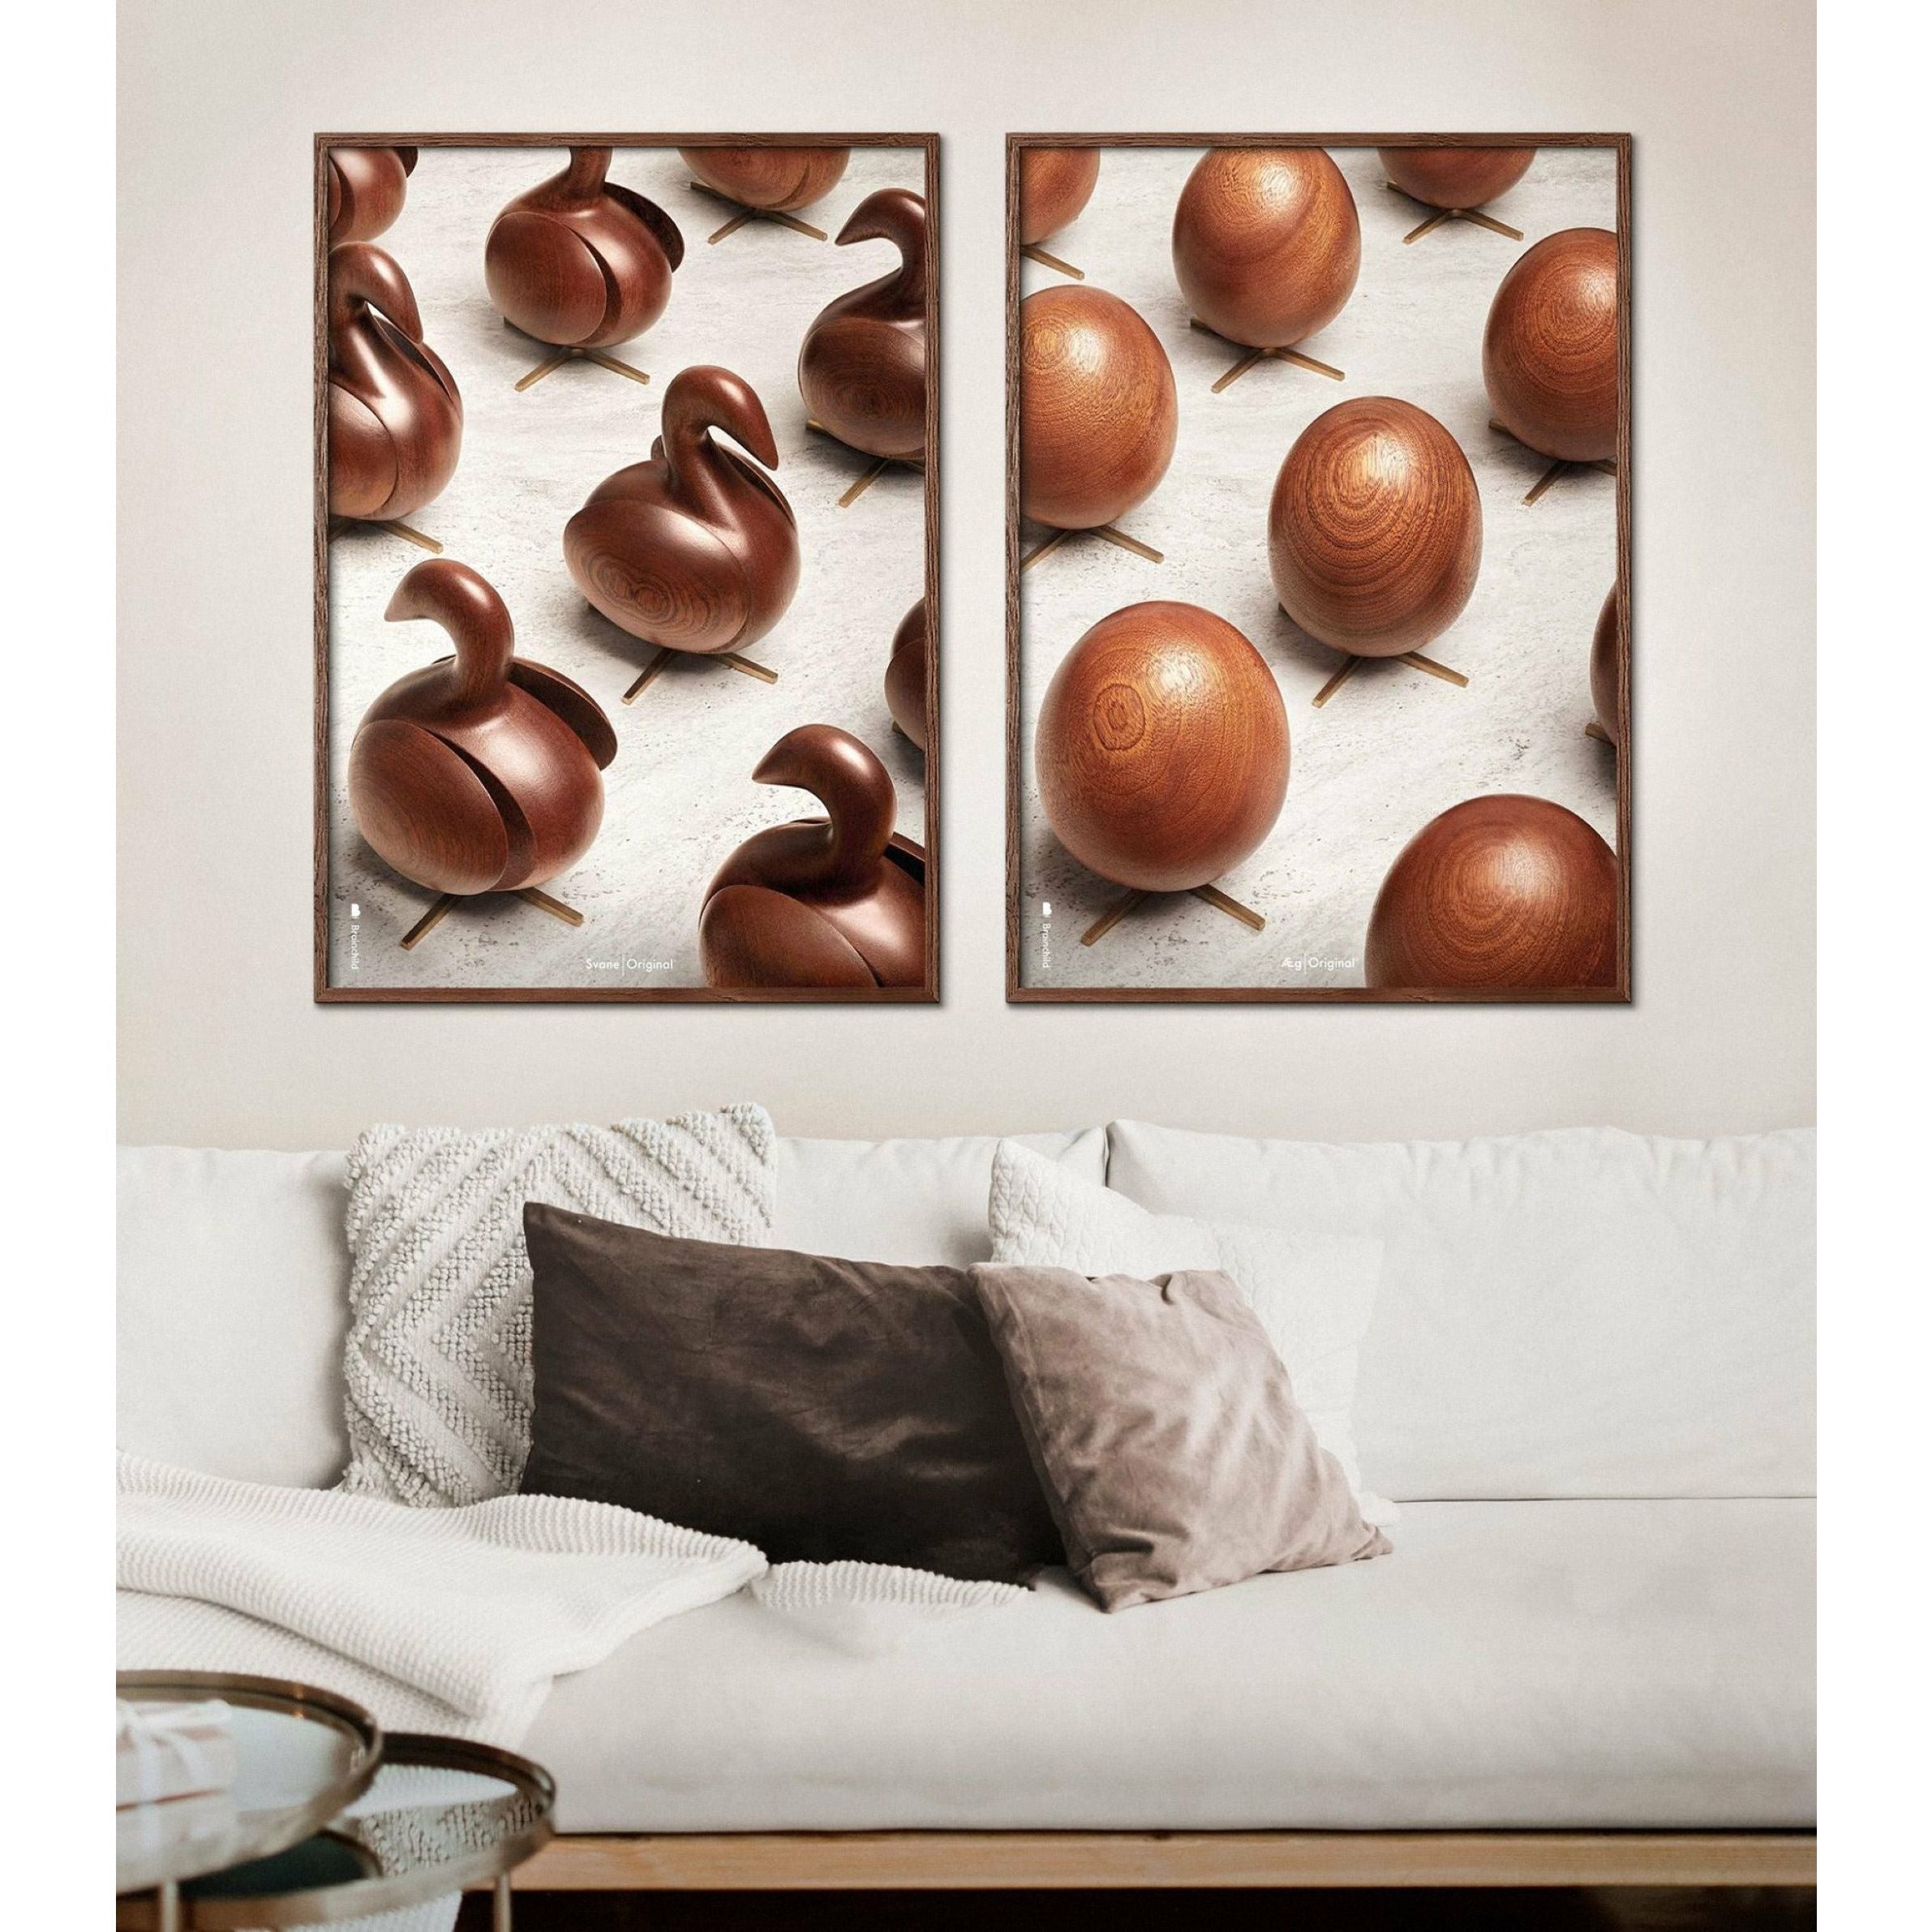 Poster per sfilata di uova di prima cornice, 70 x100 cm